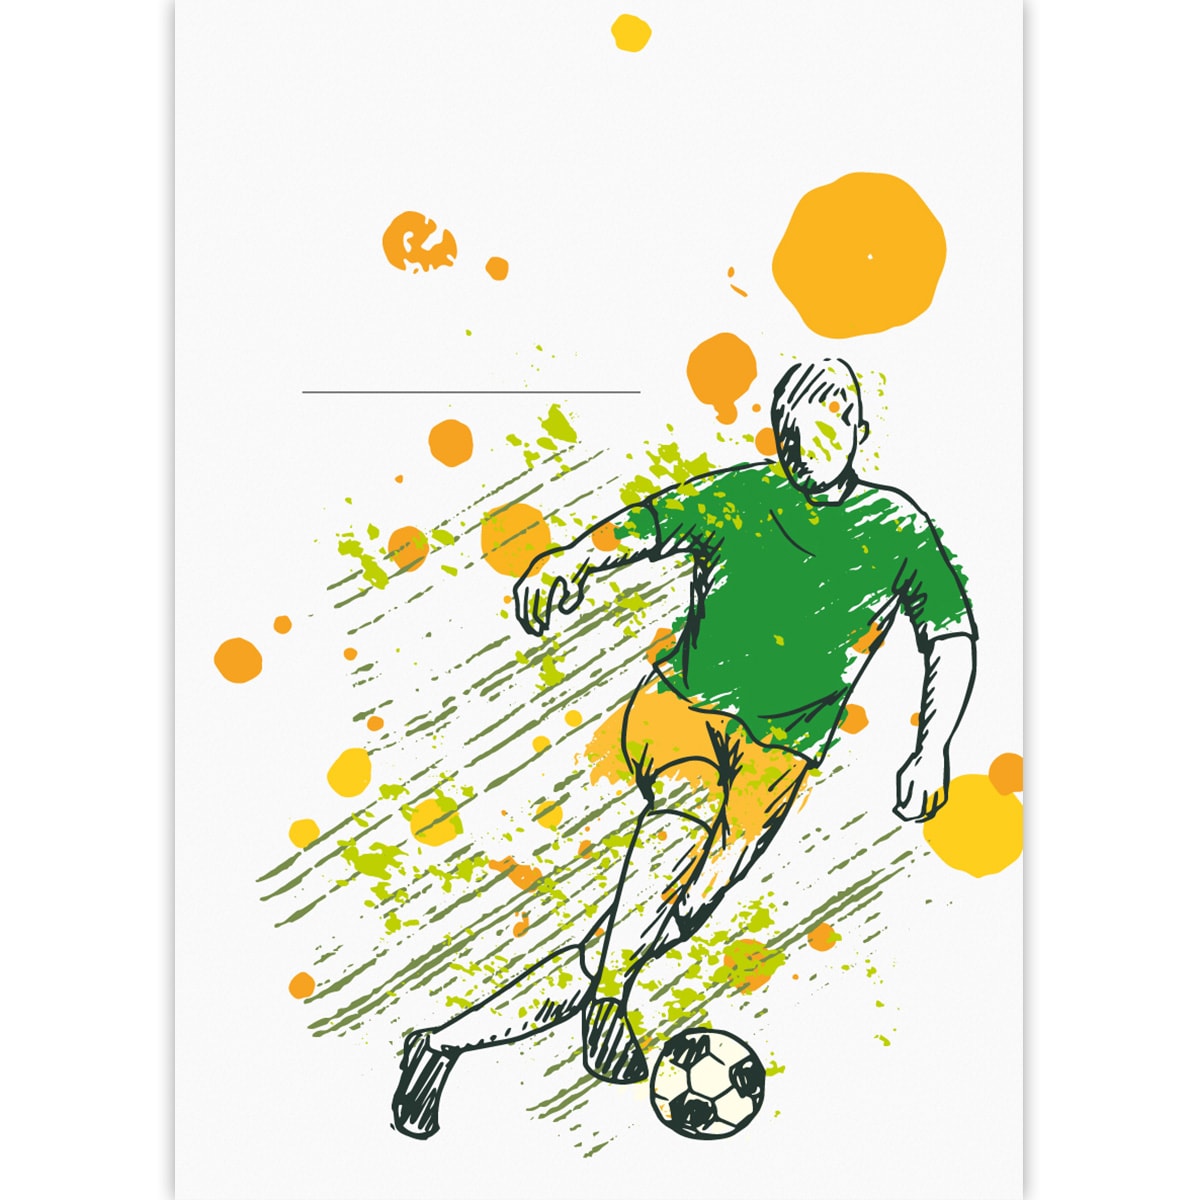 Kartenkaufrausch: Fußball DIN A3 Malblock aus unserer Malblock Papeterie in weiß